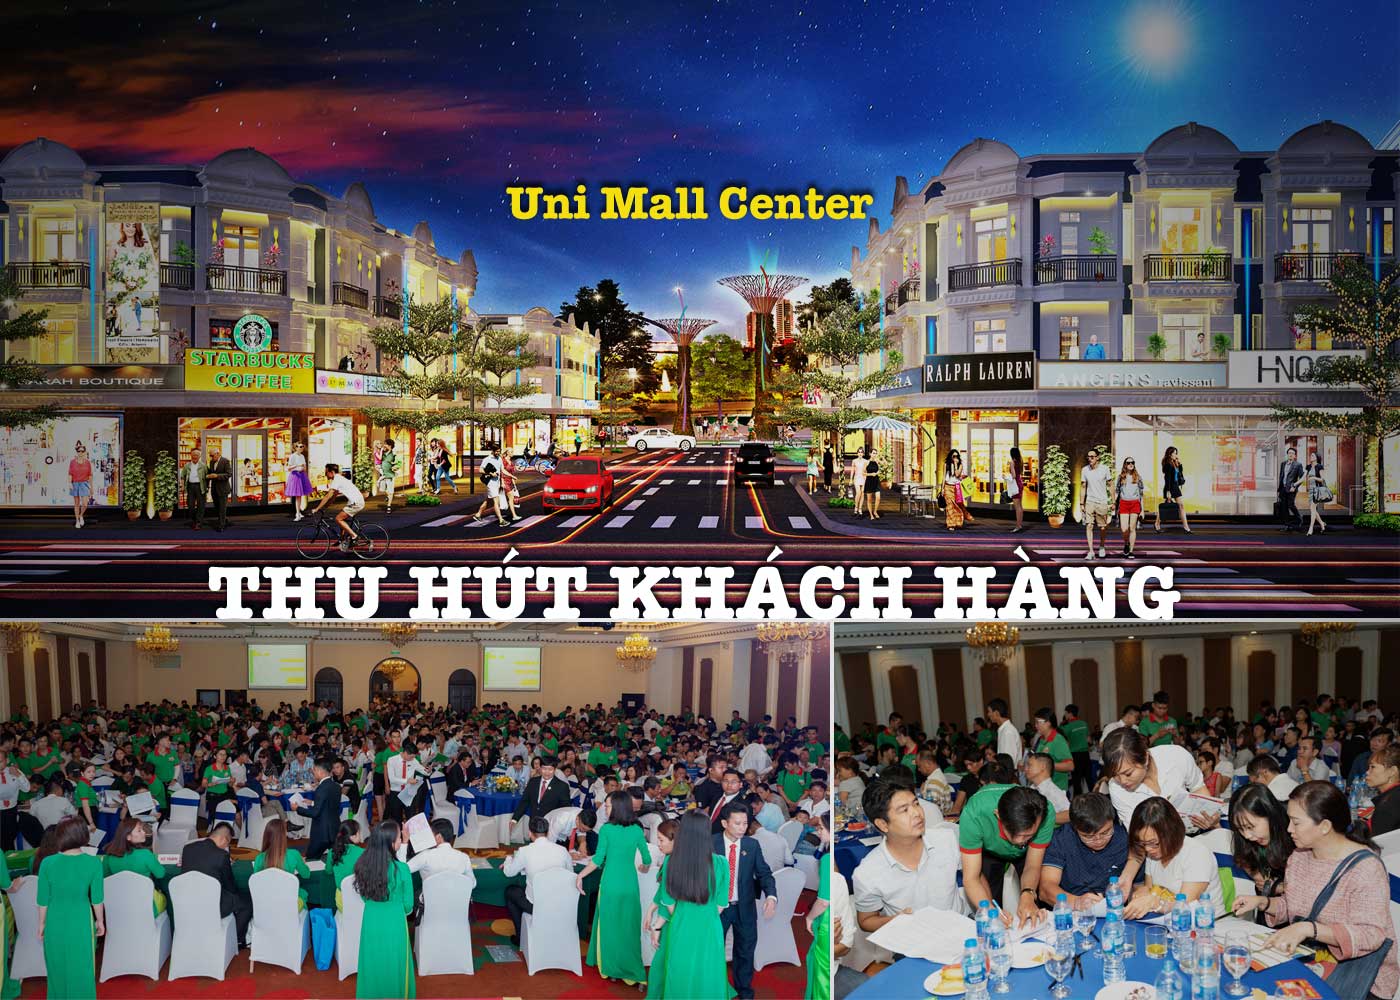 Uni Mall Center thu hút khách hàng - Ảnh 1